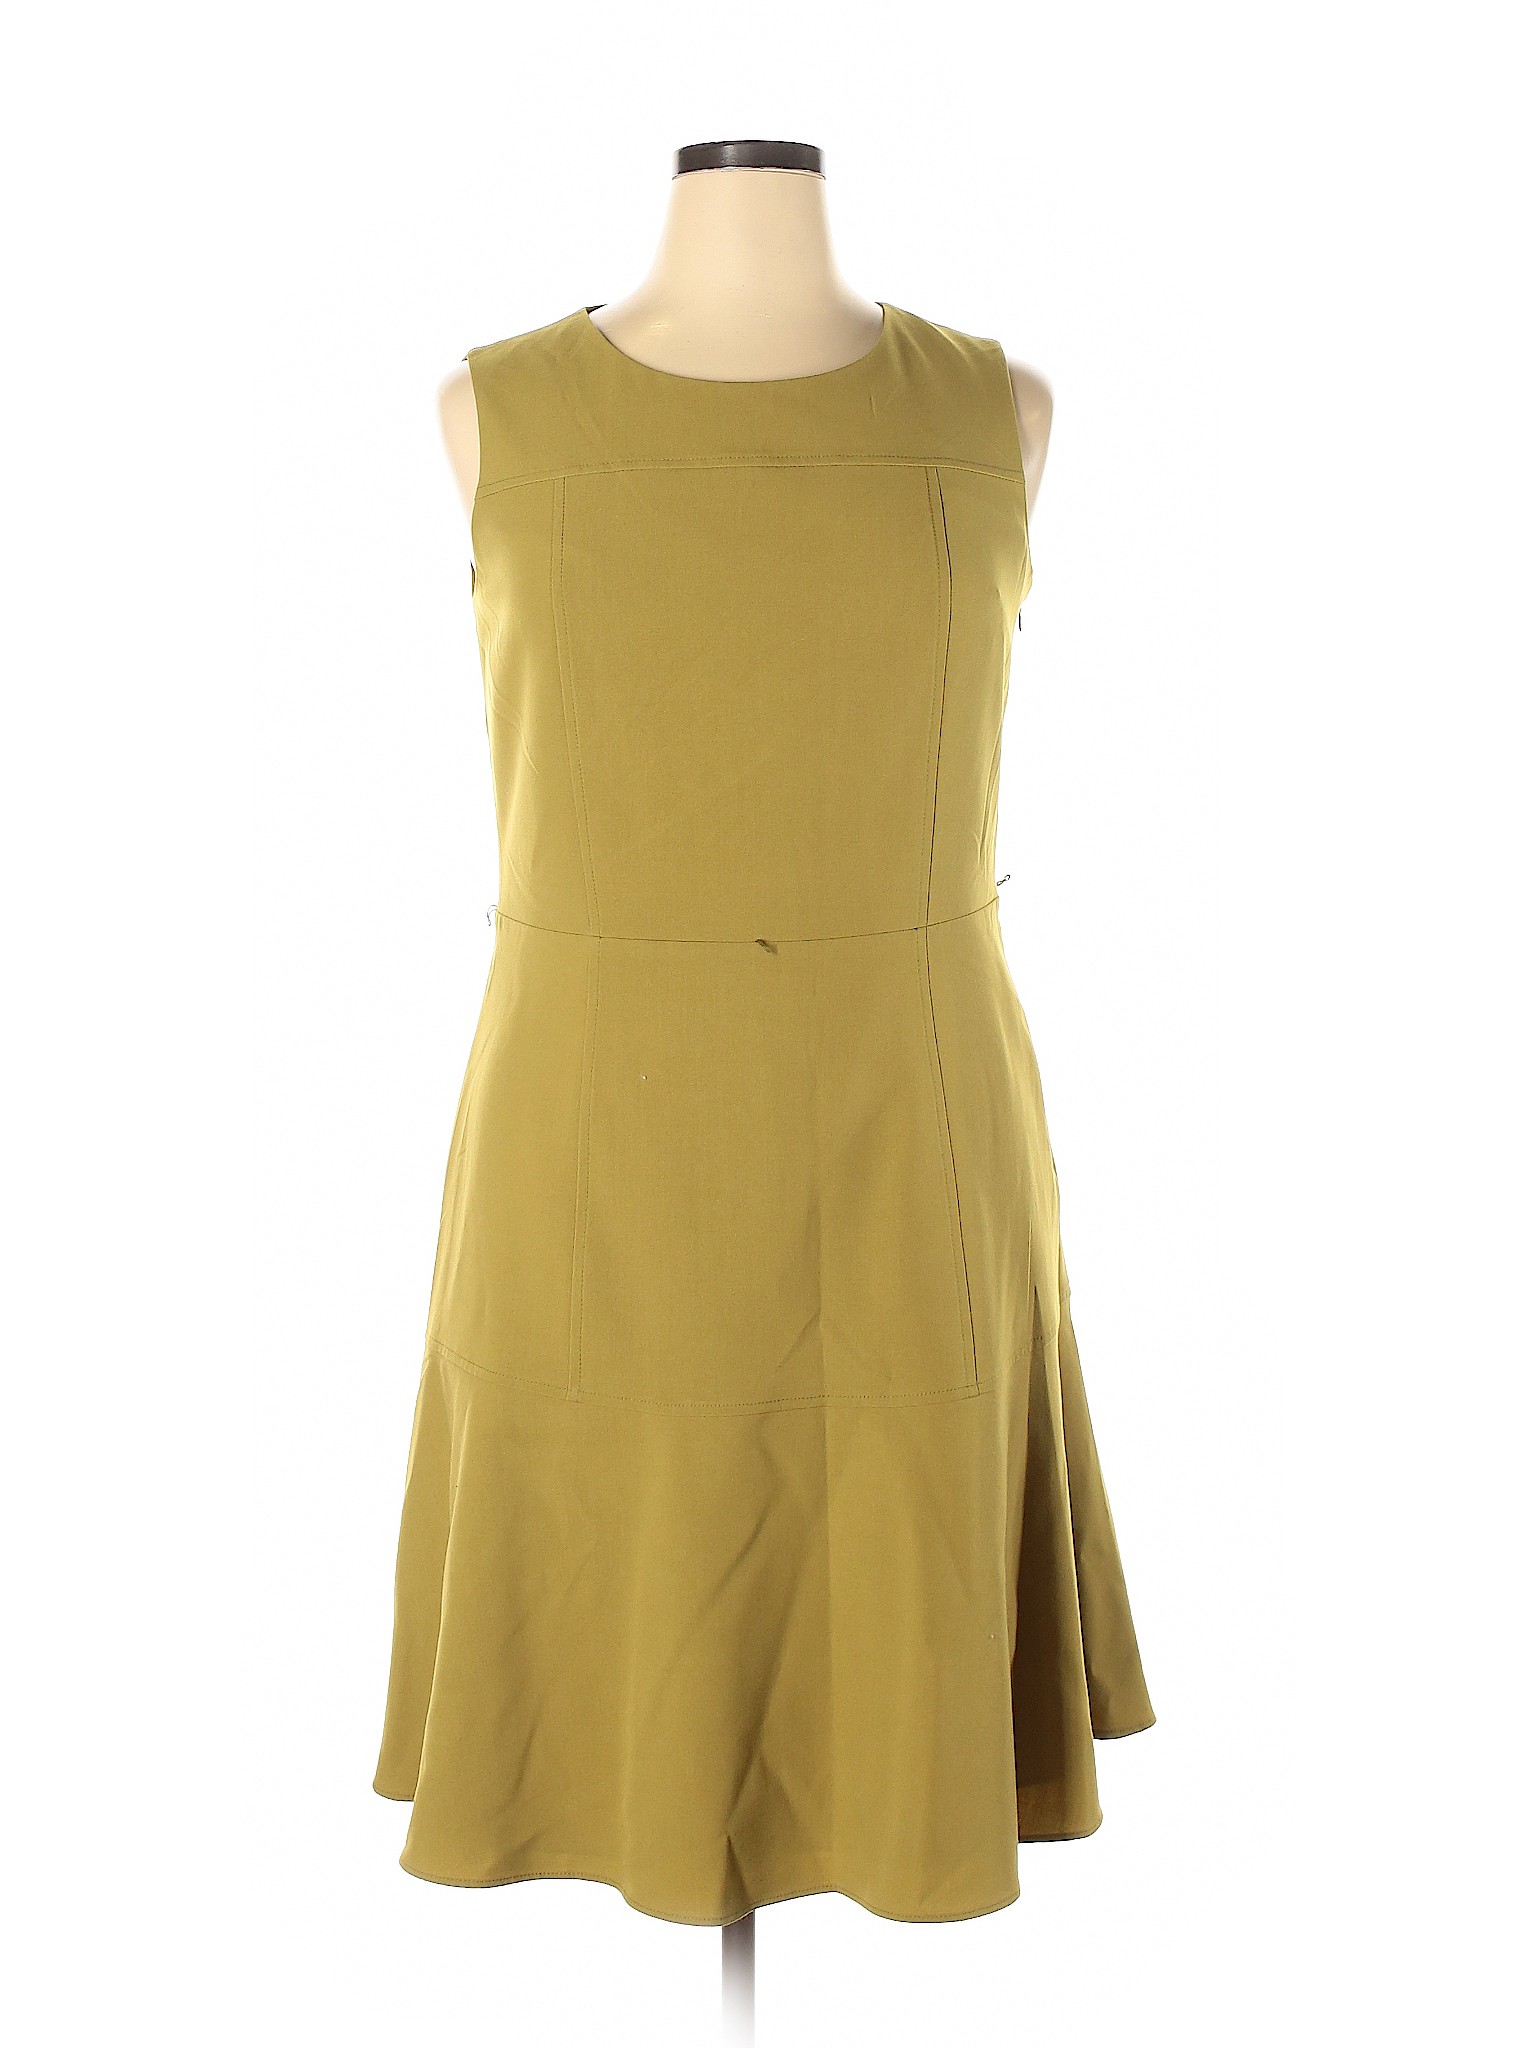 Nine West Women Green Casual Dress 14 | eBay